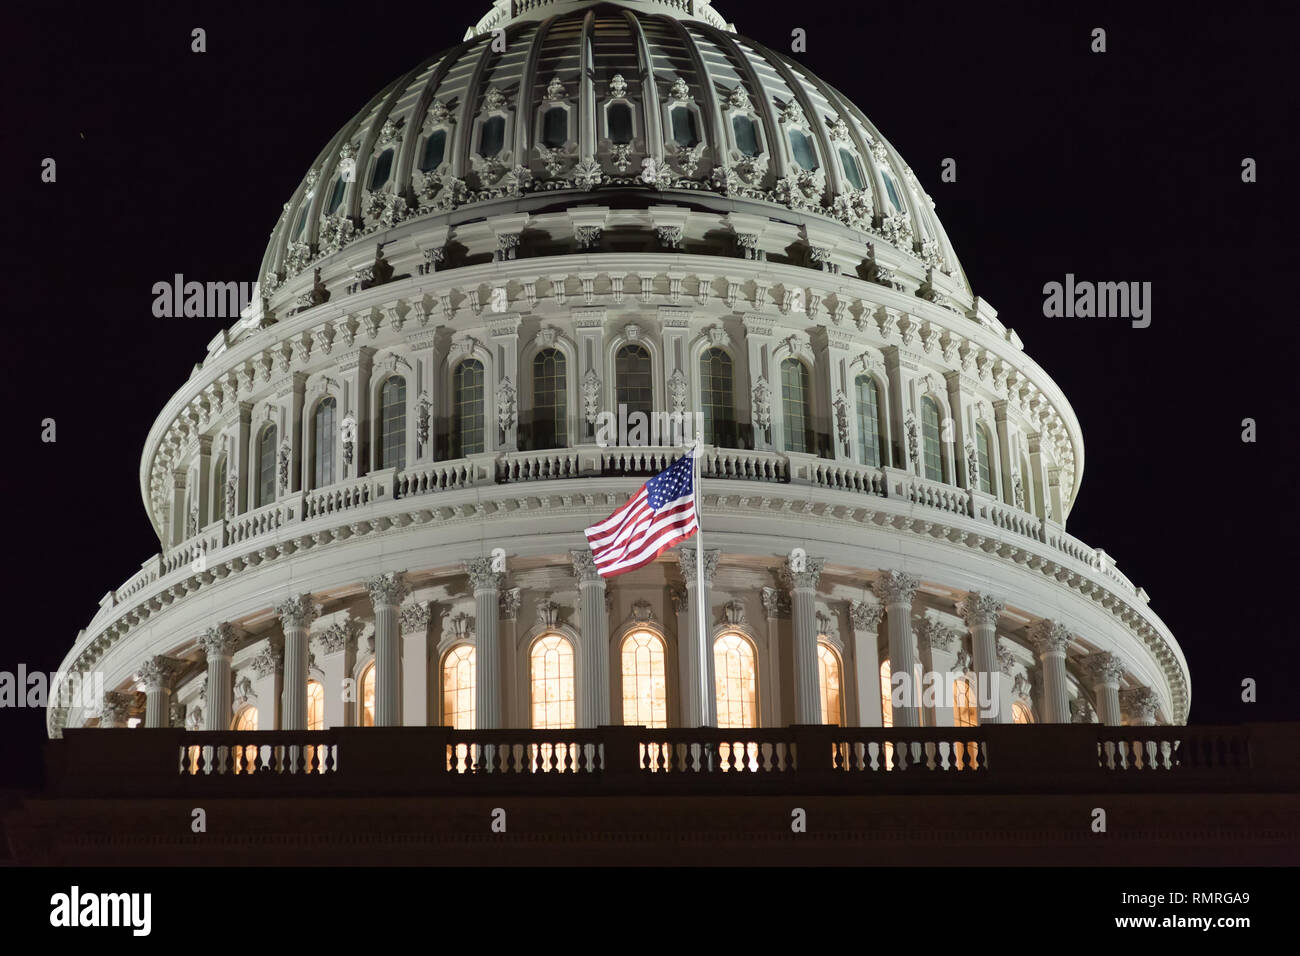 Le United States Capitol de nuit. USA Capitol Building. Congrès des États-Unis. Dome close-up. Washington DC. Banque D'Images